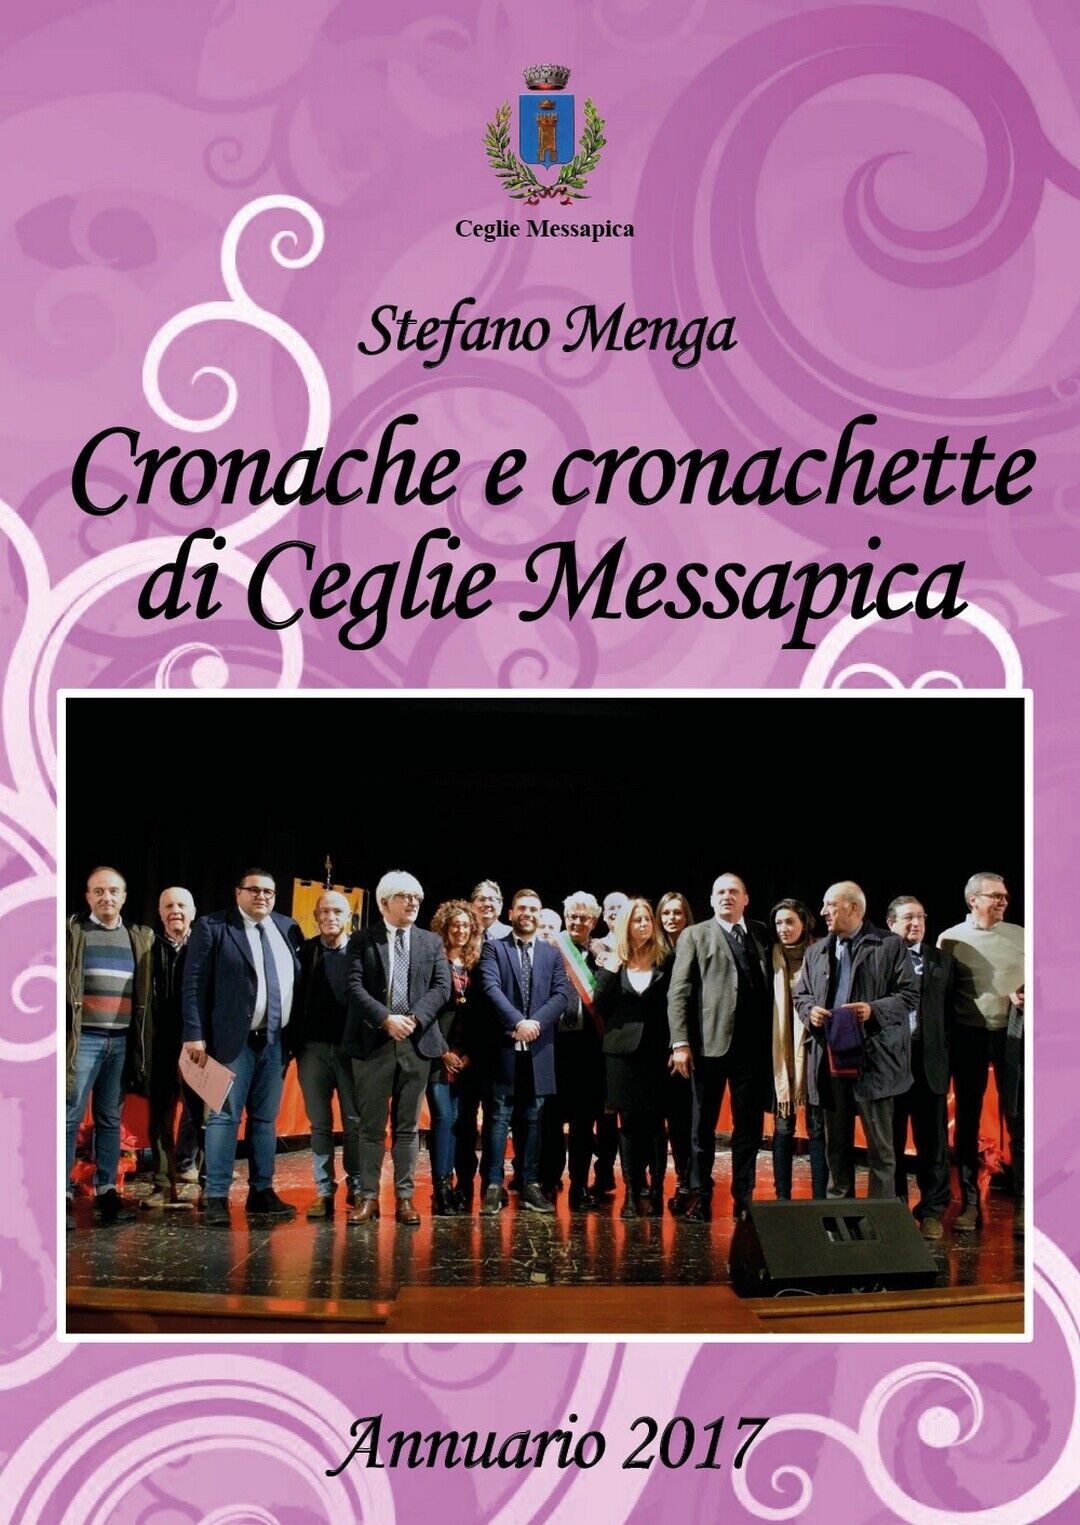 Cronache e cronachette di Ceglie Messapica - Annuario 2017  di Stefano Menga